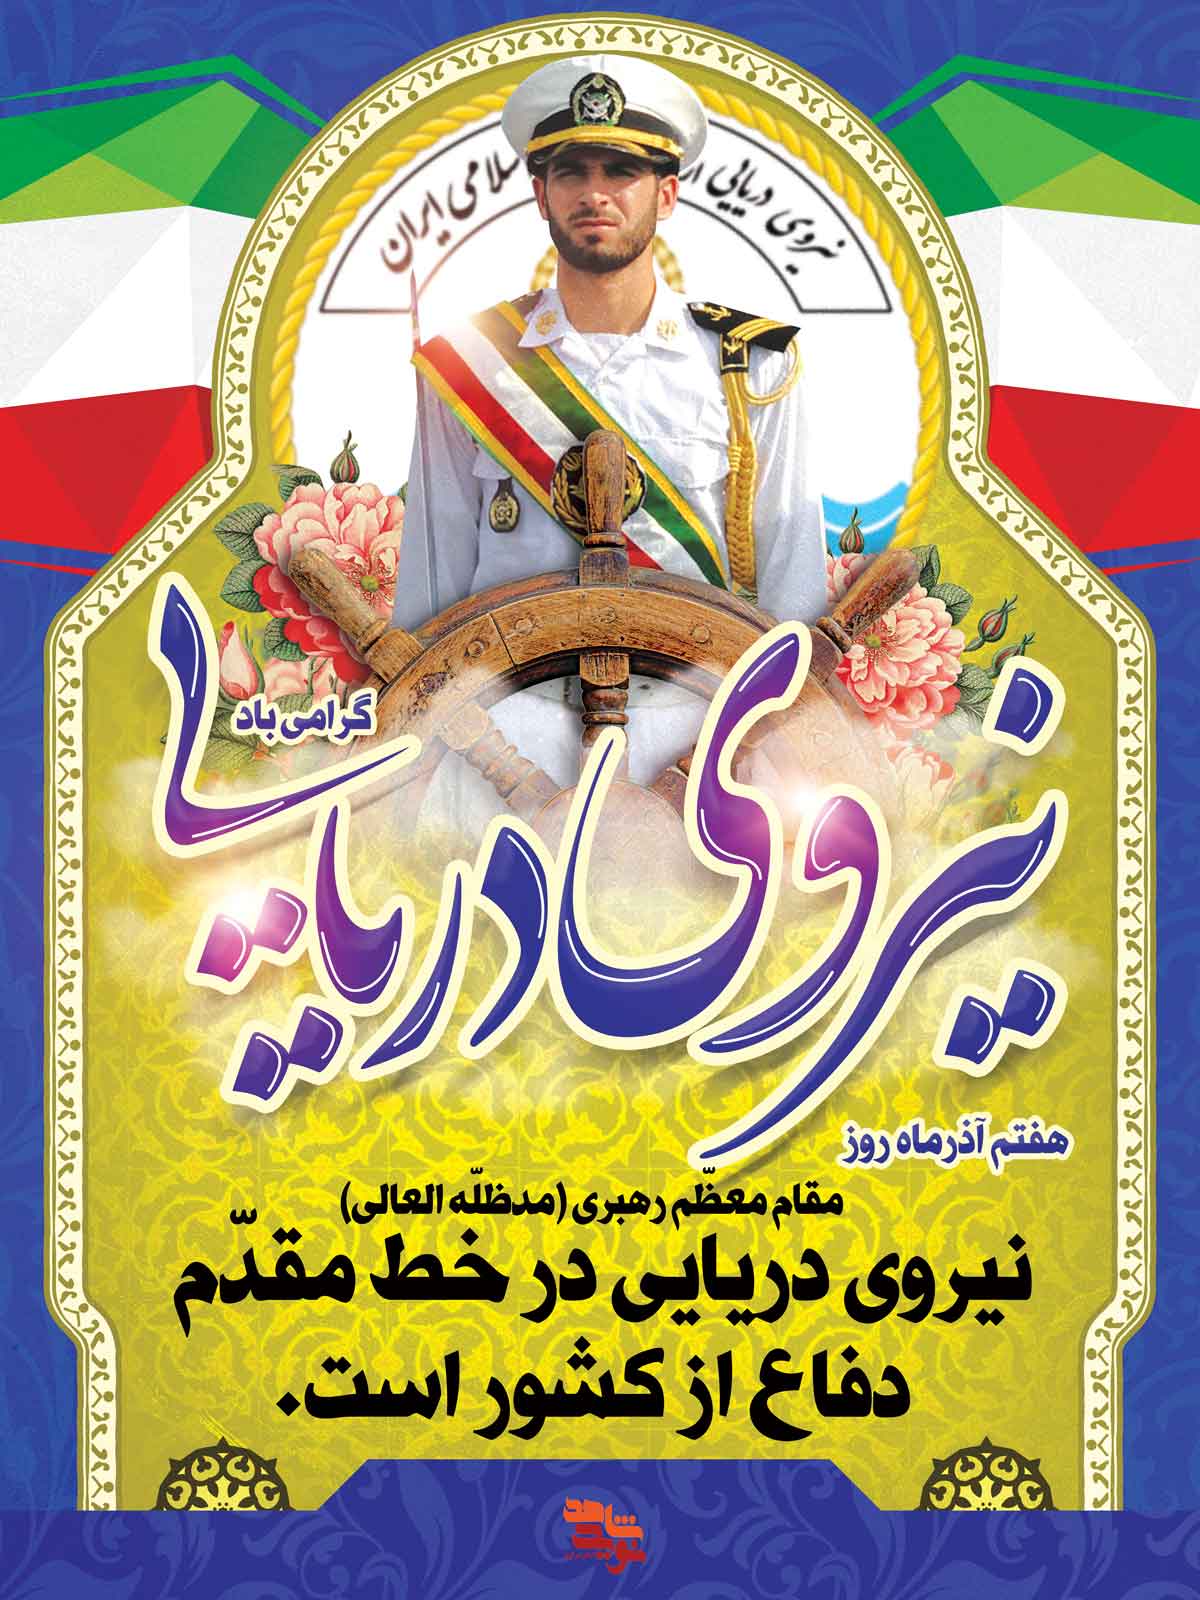 پوستر | روز نیروی دریایی ارتش جمهوری اسلامی